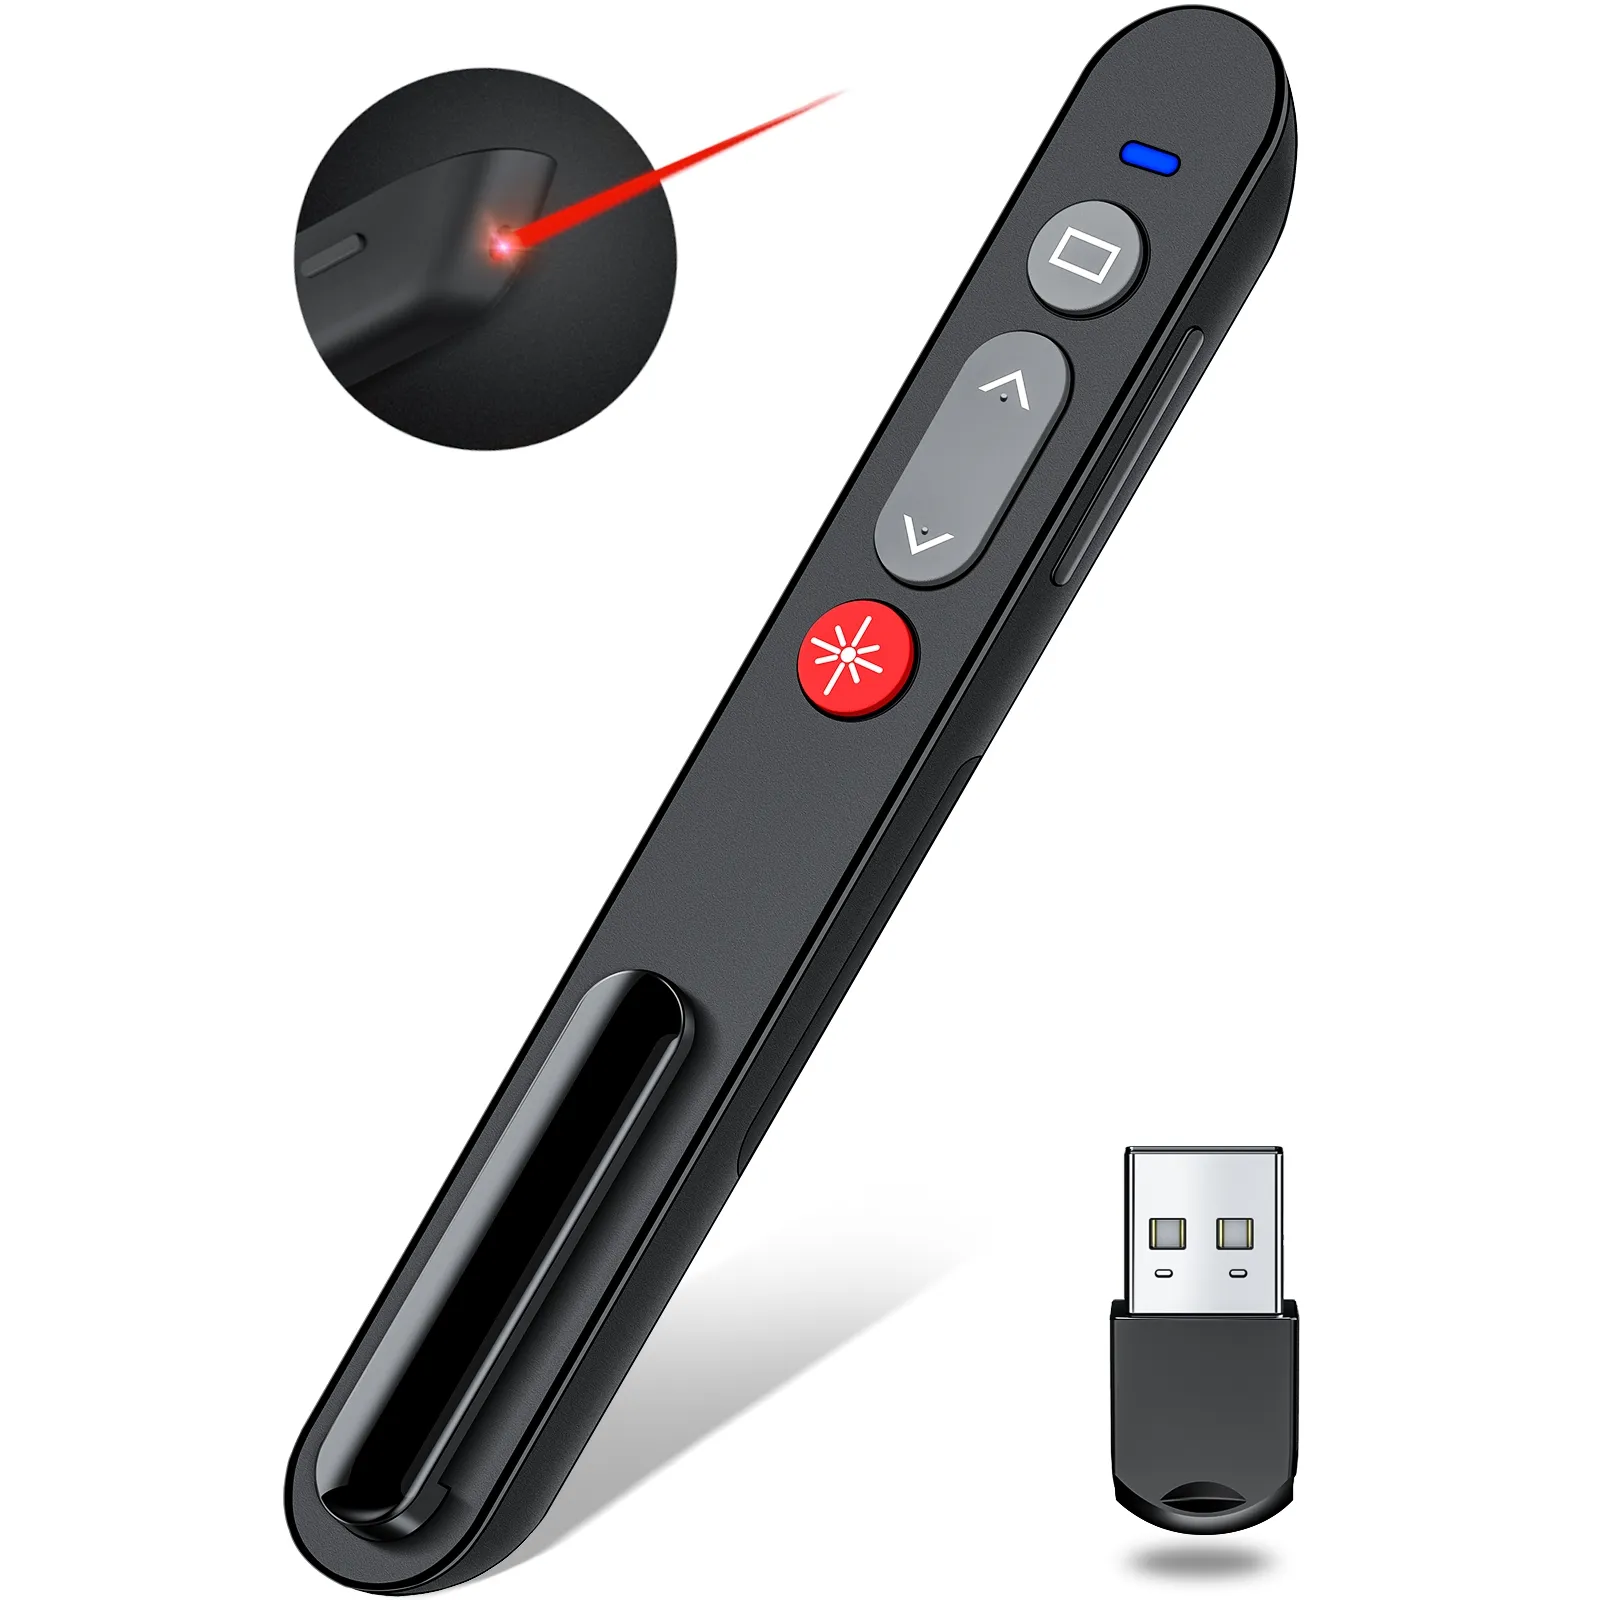 Kliker Presentasi Nirkabel USB 2.4GHz, untuk Presentasi Powerpoint, Mendukung Hyperlink dan Kontrol Volume Laser Merah untuk Pointer